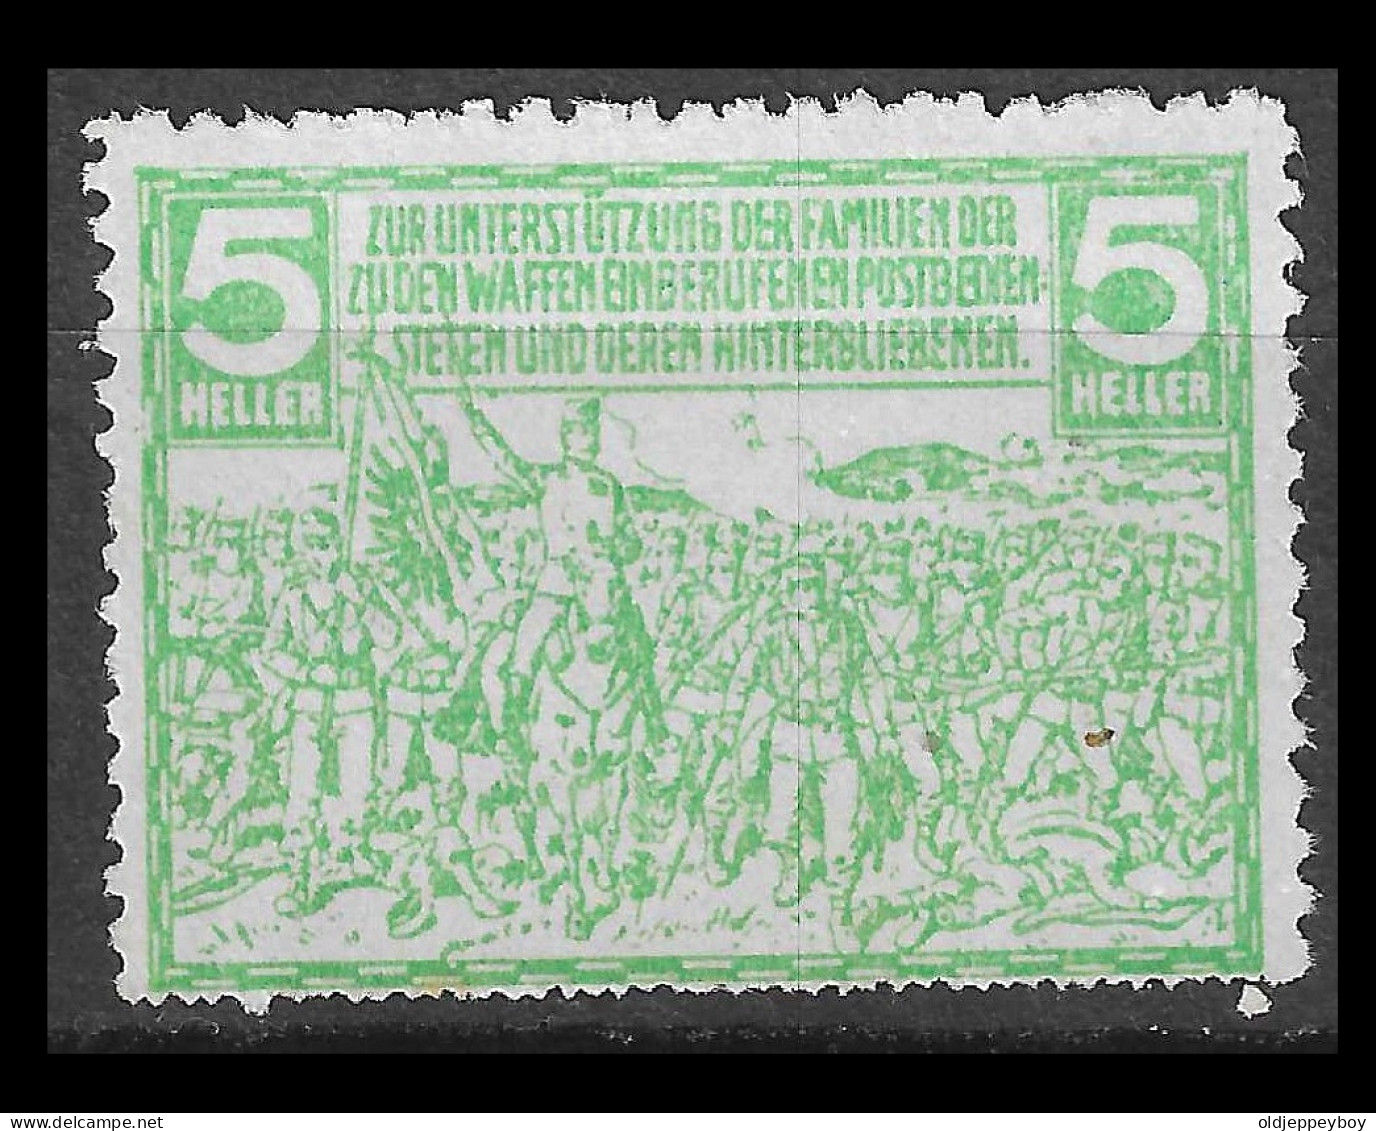 VIGNETTE CINDERELLA Germany AUSTRIA  MILITARIA WW1 1914 - 1918 ZUR UNTERSTUTZUNG DER FAMILIEN DER SUDEN WAFFEN - Croce Rossa